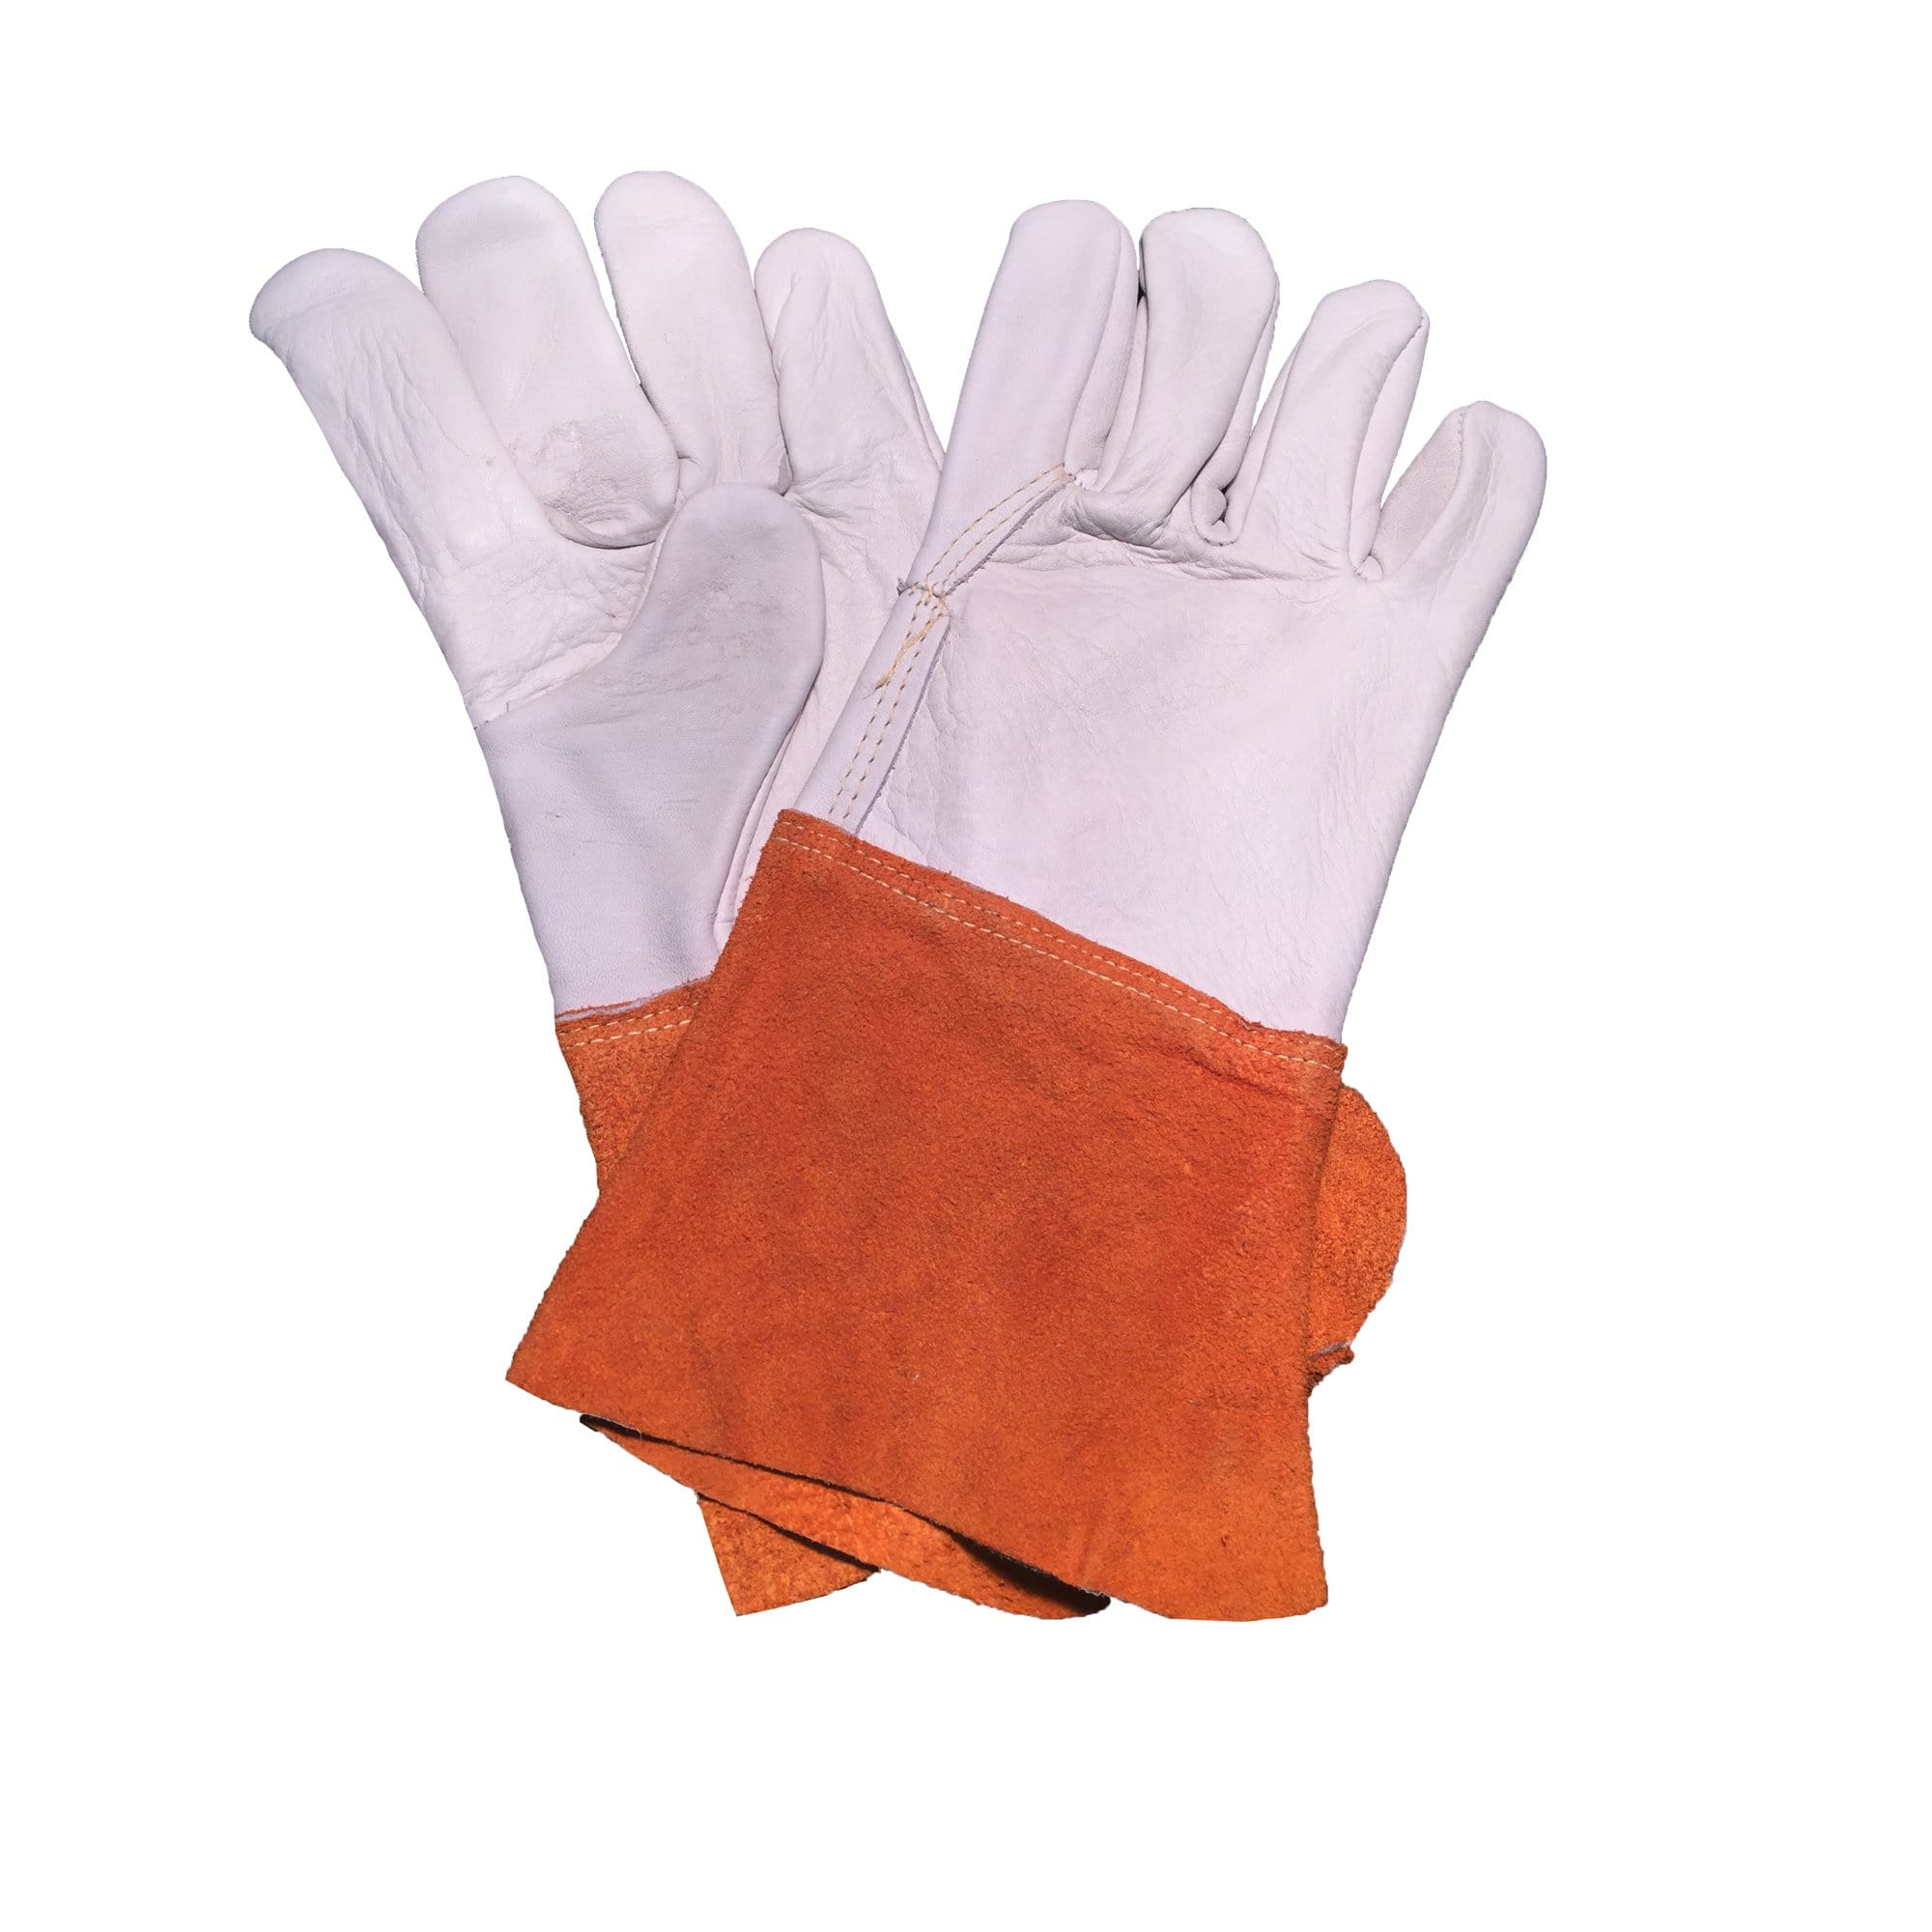 leather light duty work gloves - fruit picking gloves